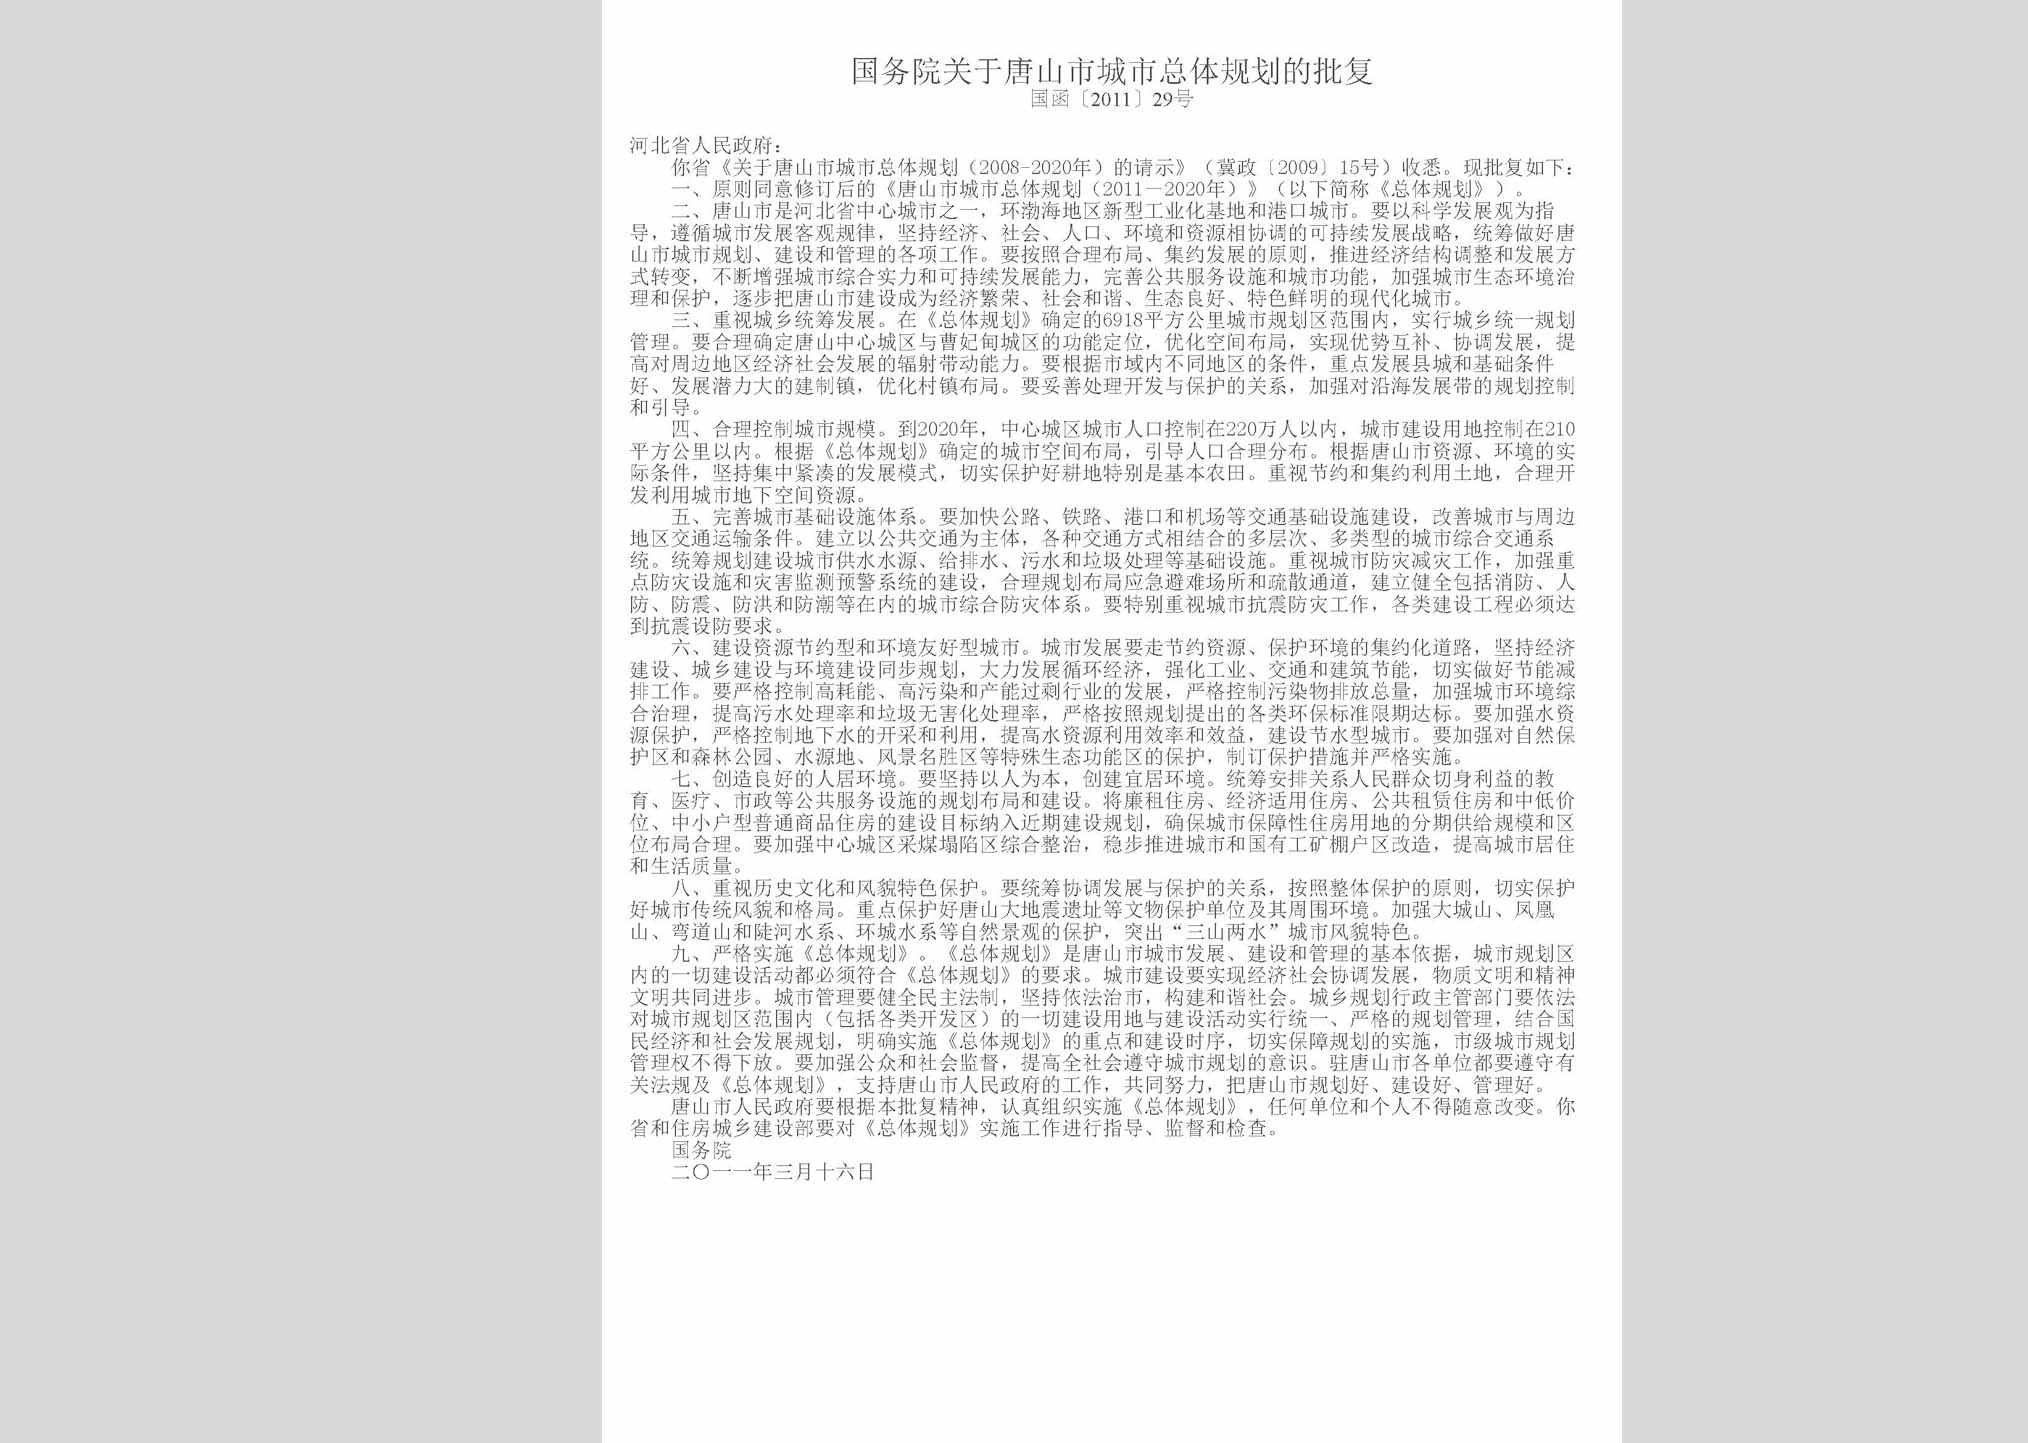 国函[2011]29号：国务院关于唐山市城市总体规划的批复